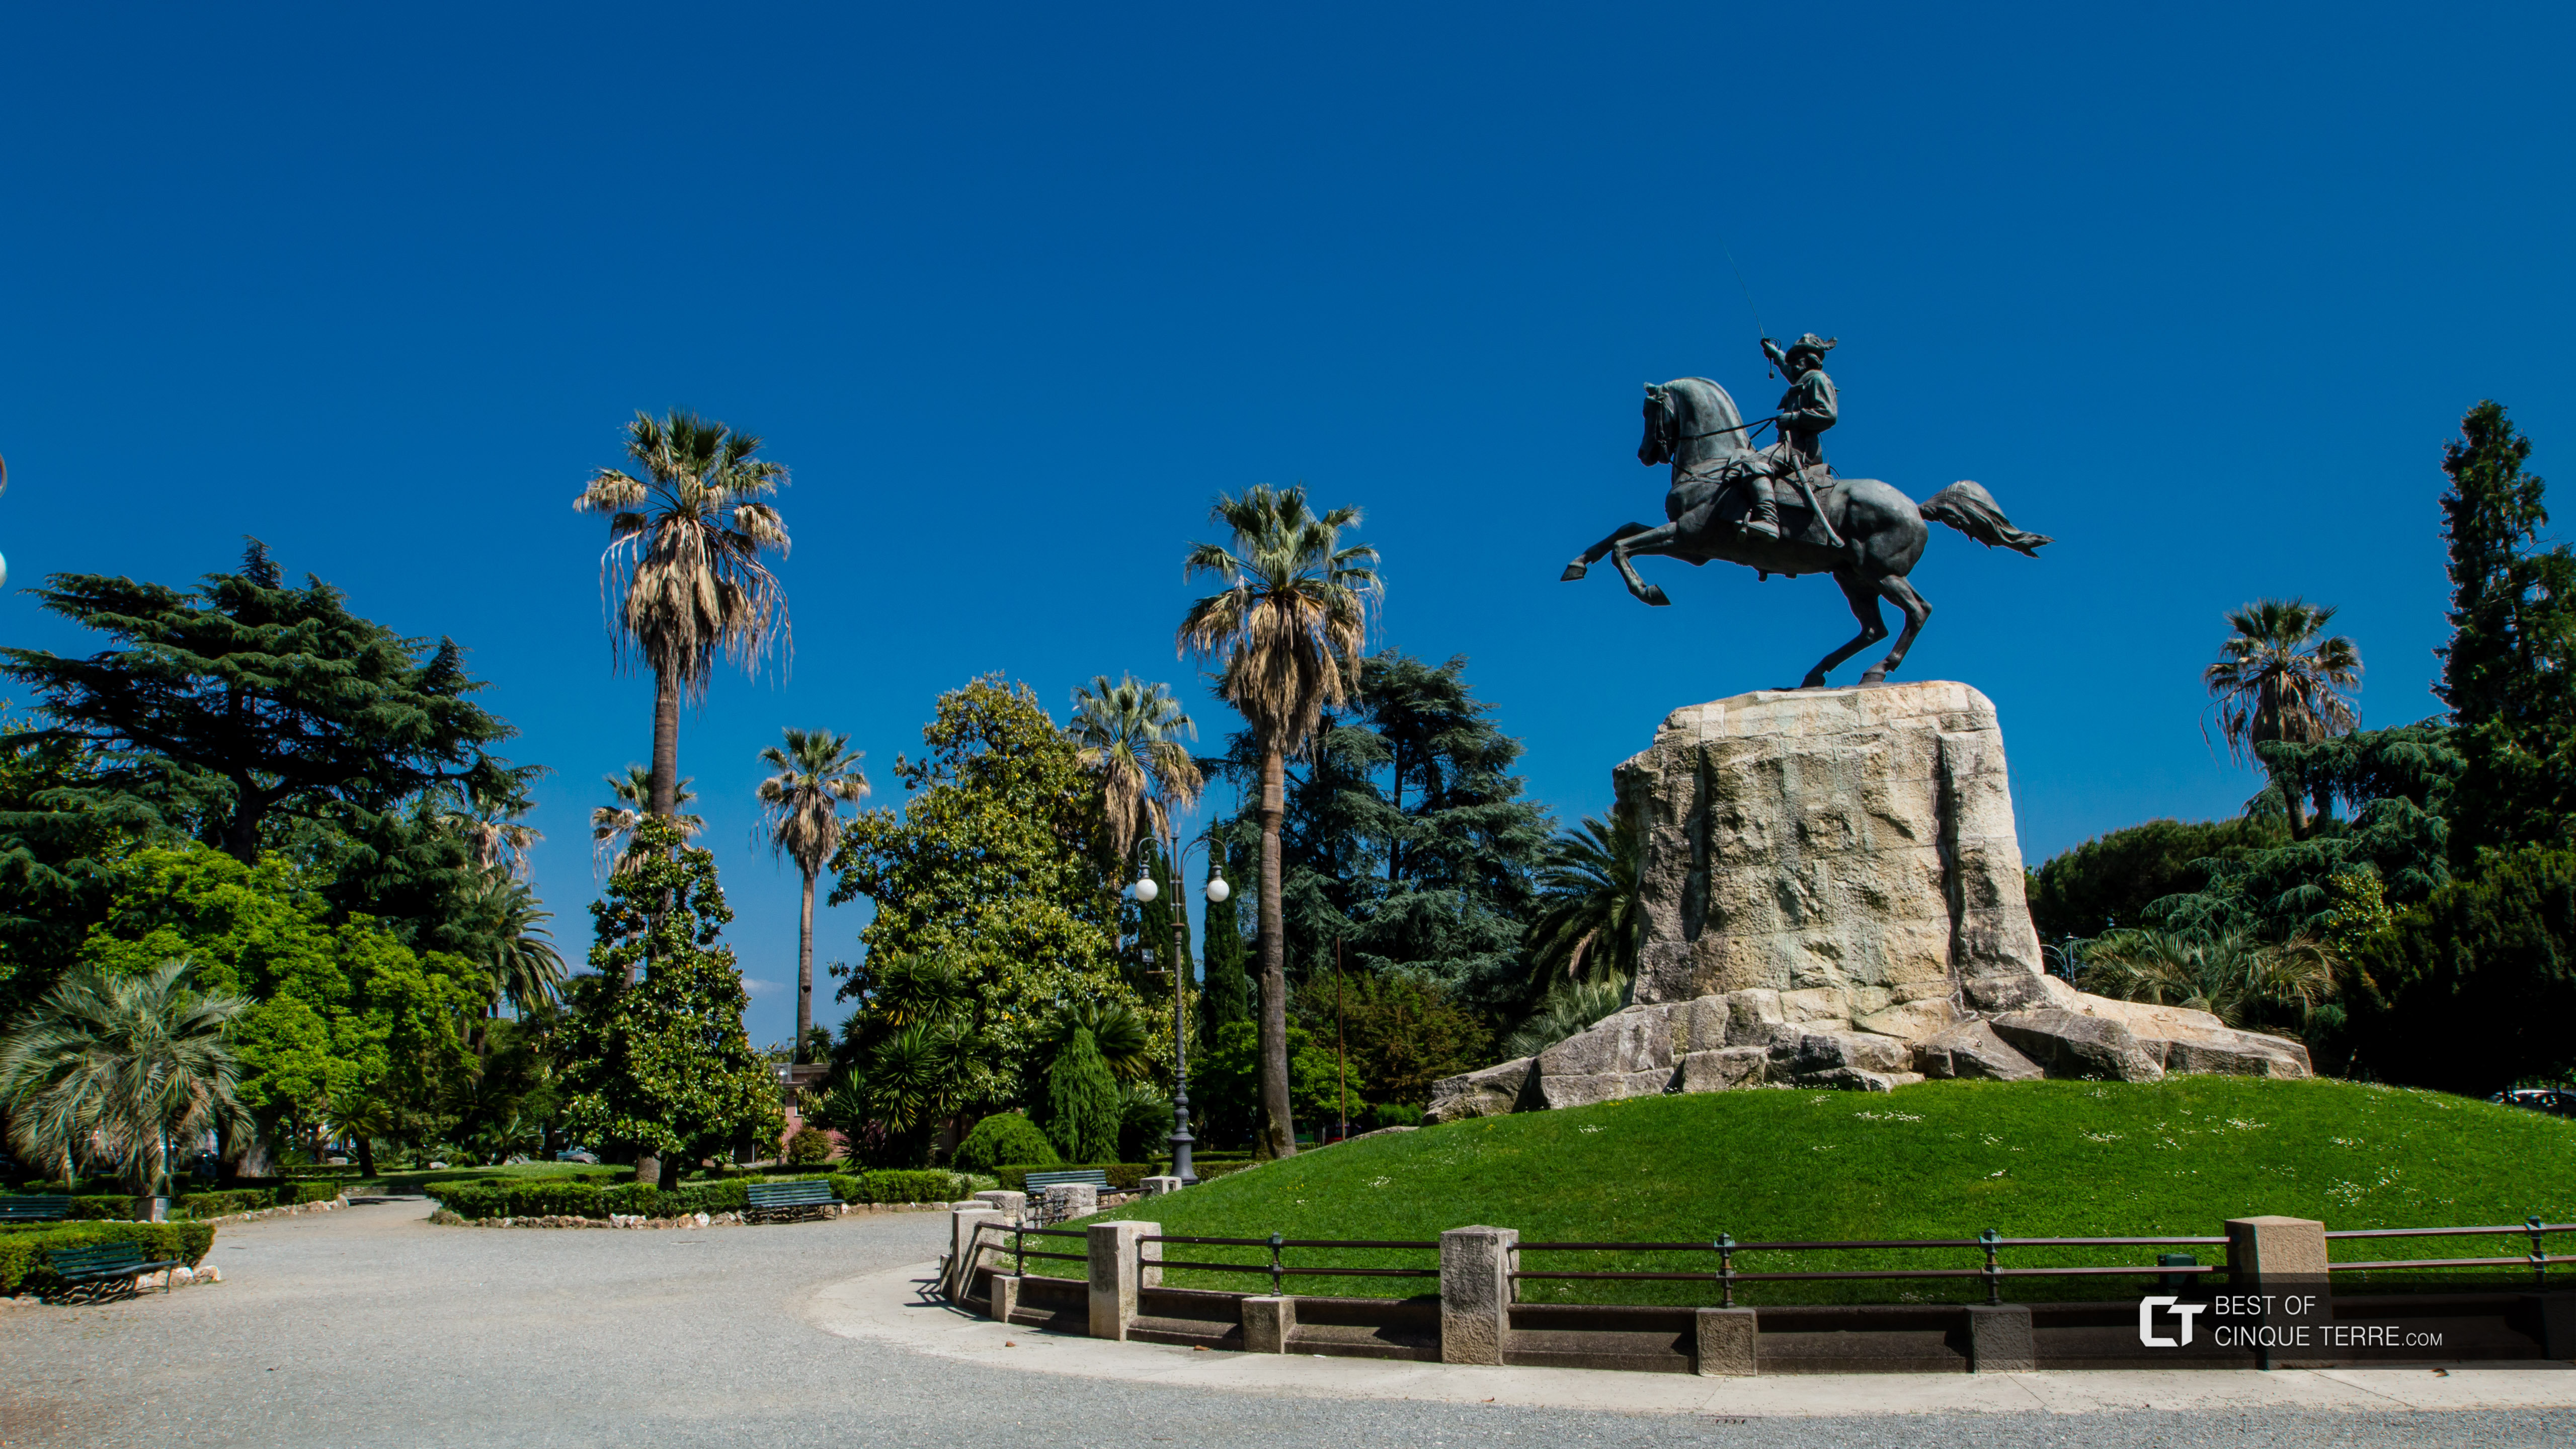 Памятник Джузеппе Гарибальди в парке у набережной, Ла Специя, Италия